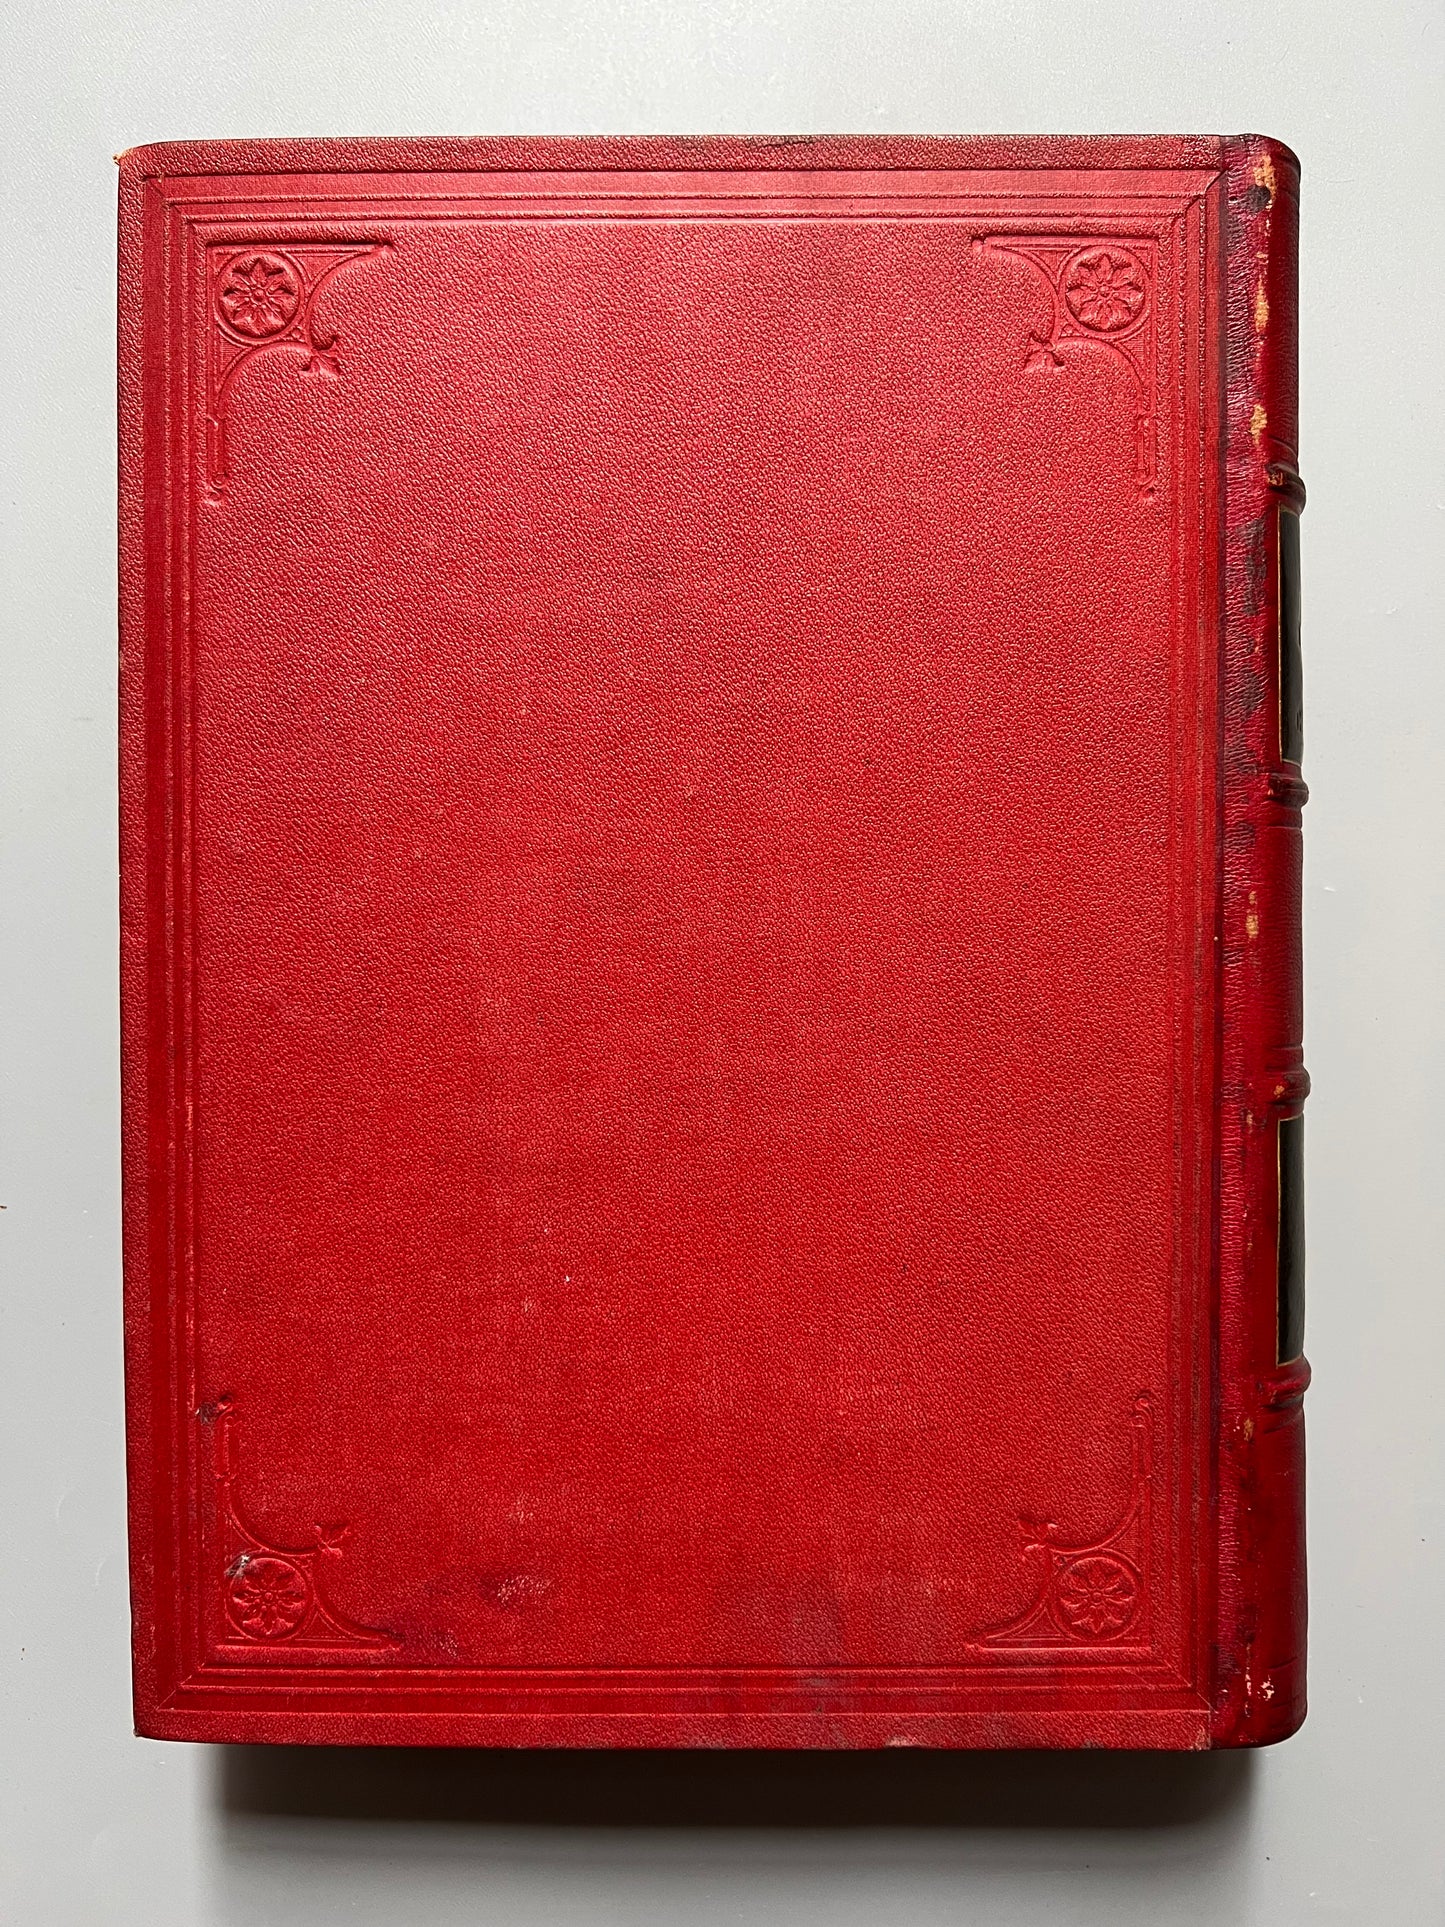 La historia crítica de Cataluña, Antonio de Bofarull - Juan Aleu i Fugarull editor, 1876/1878